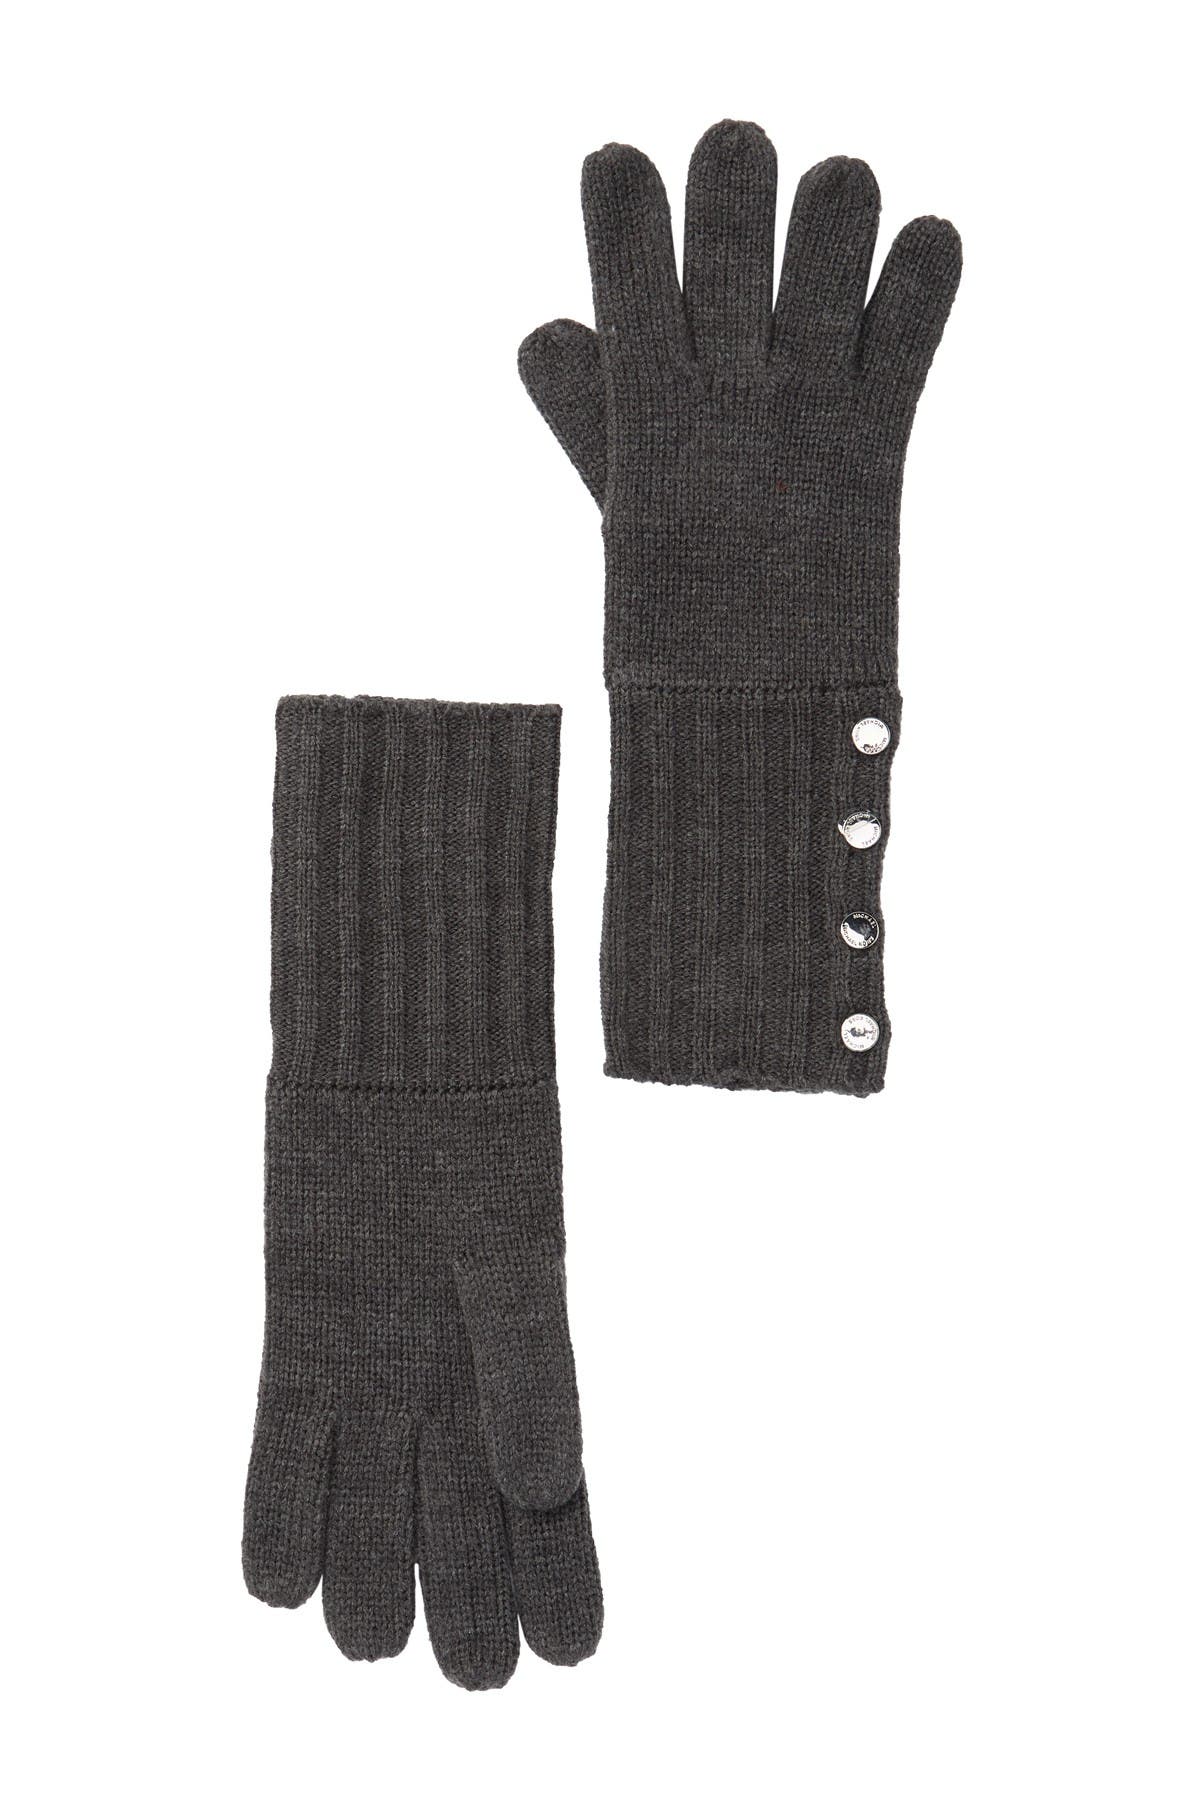 michael kors knit gloves